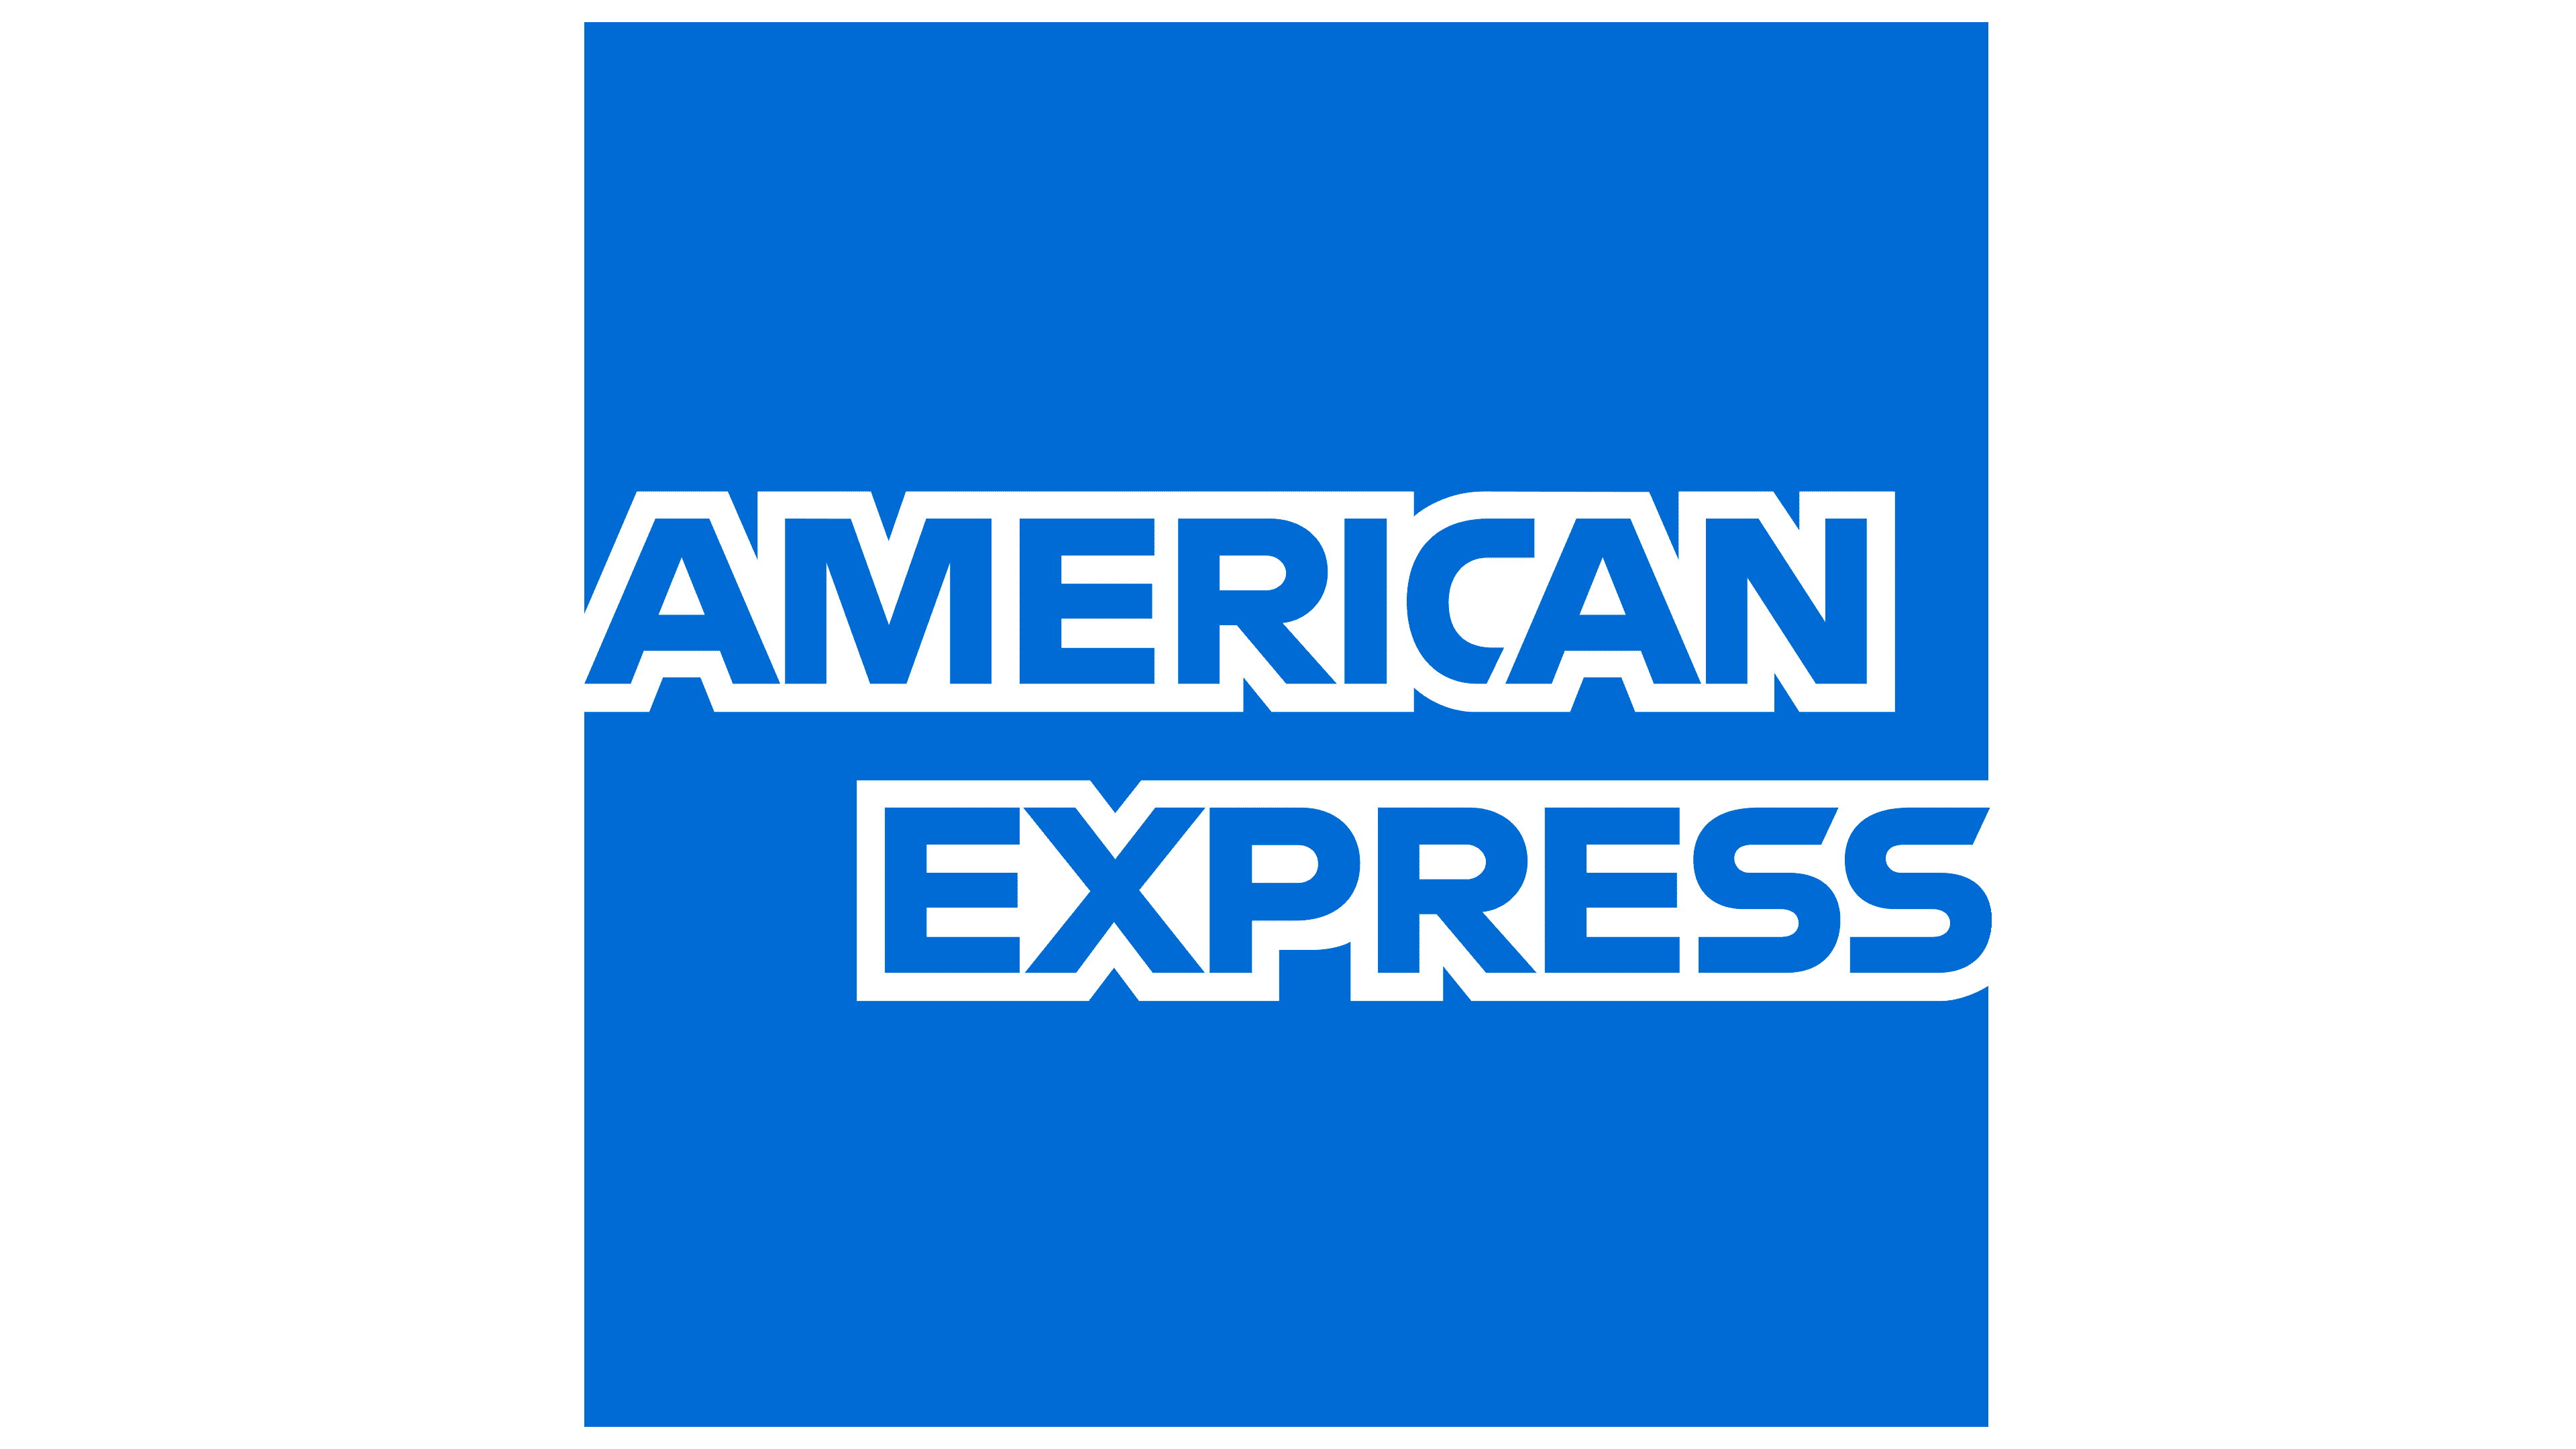 Pga tu Revisión Técnico Mecánica con American Express